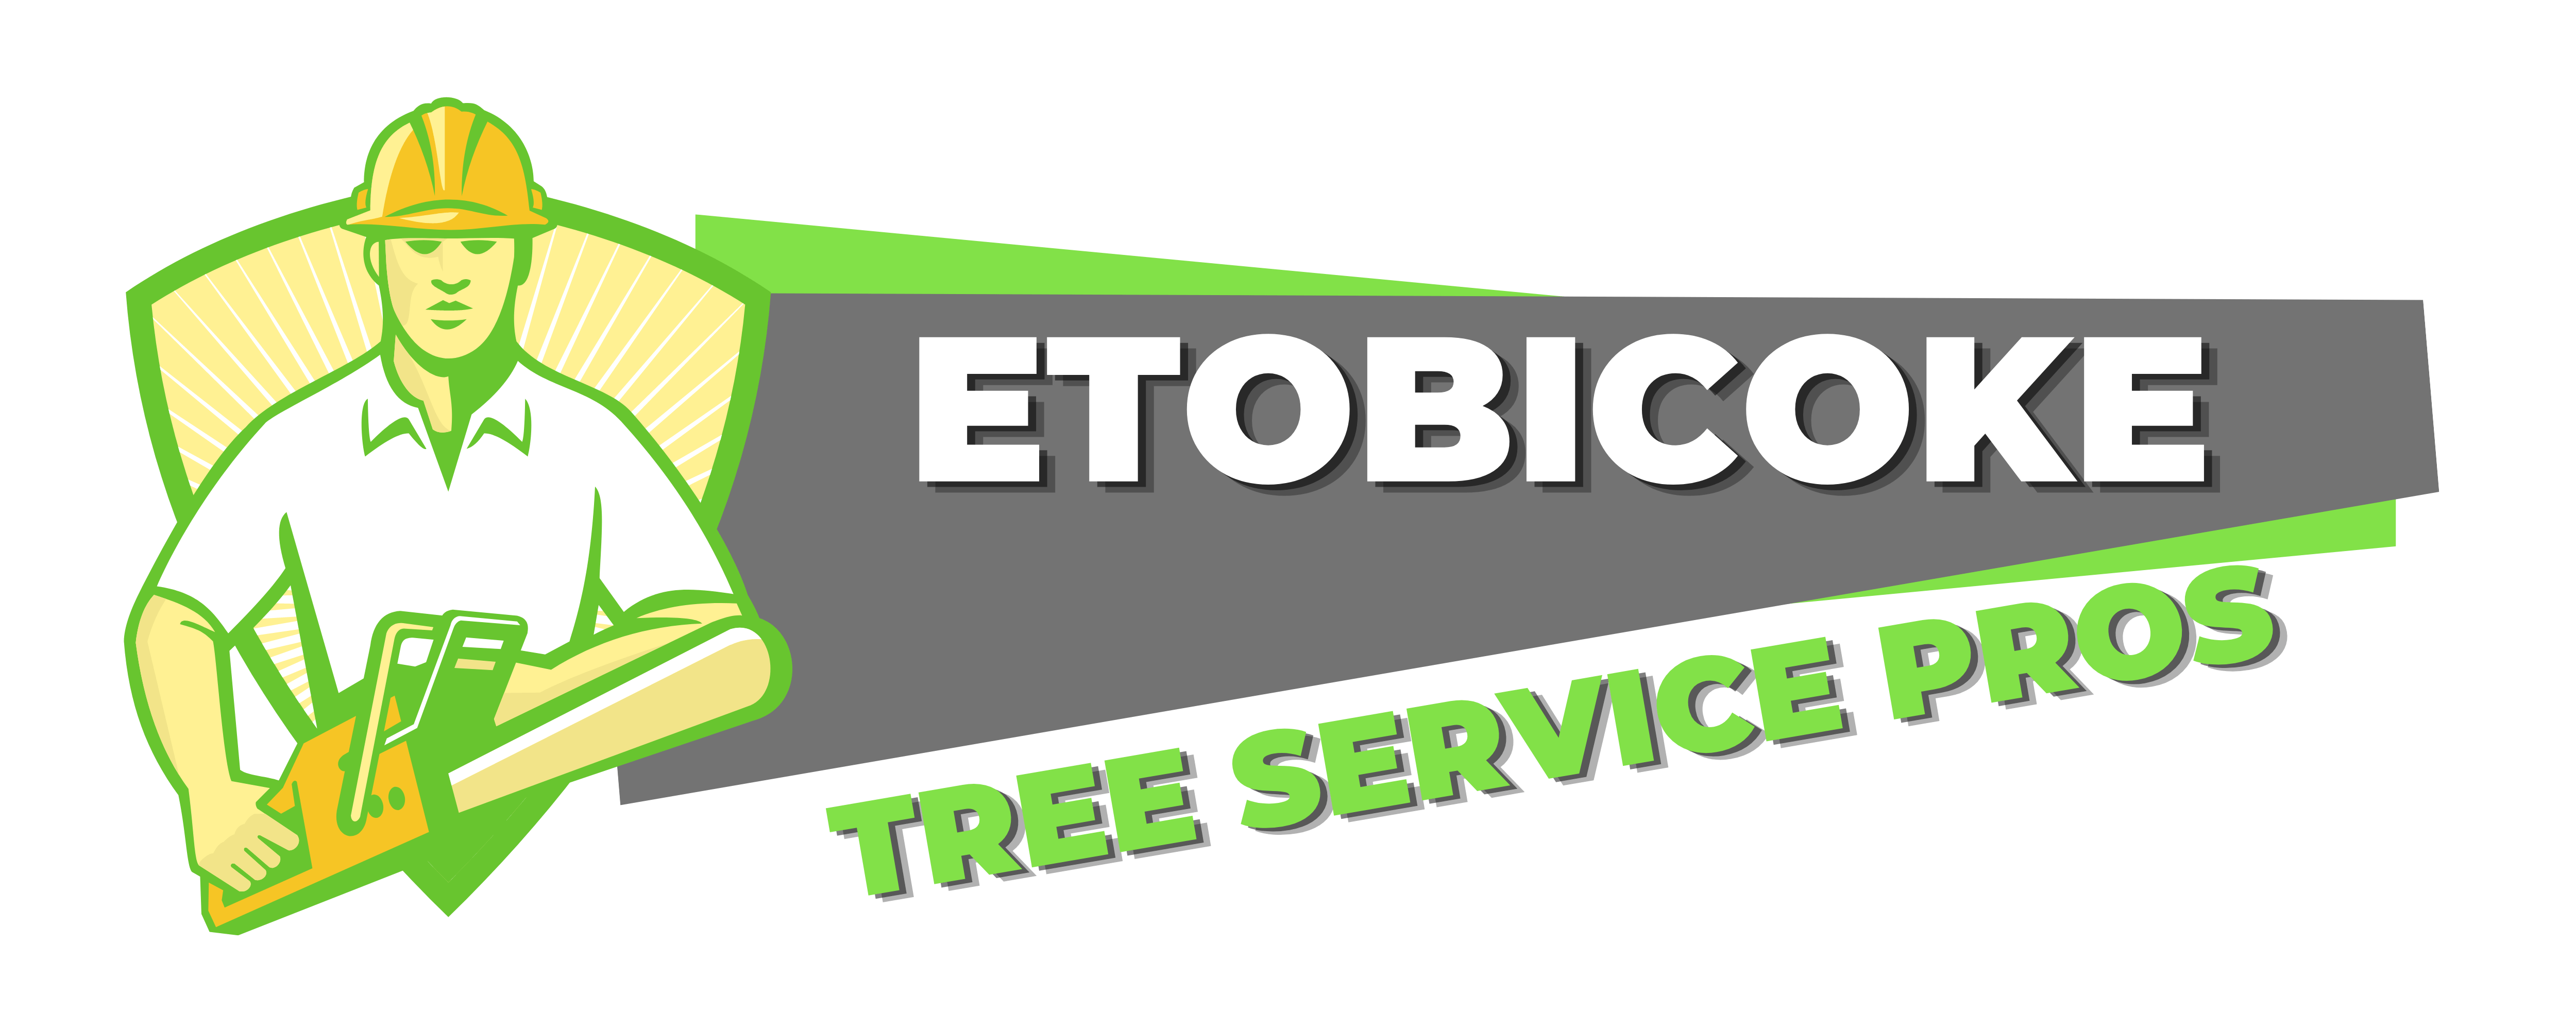 A logo by Etobicoke Tree Service Pros